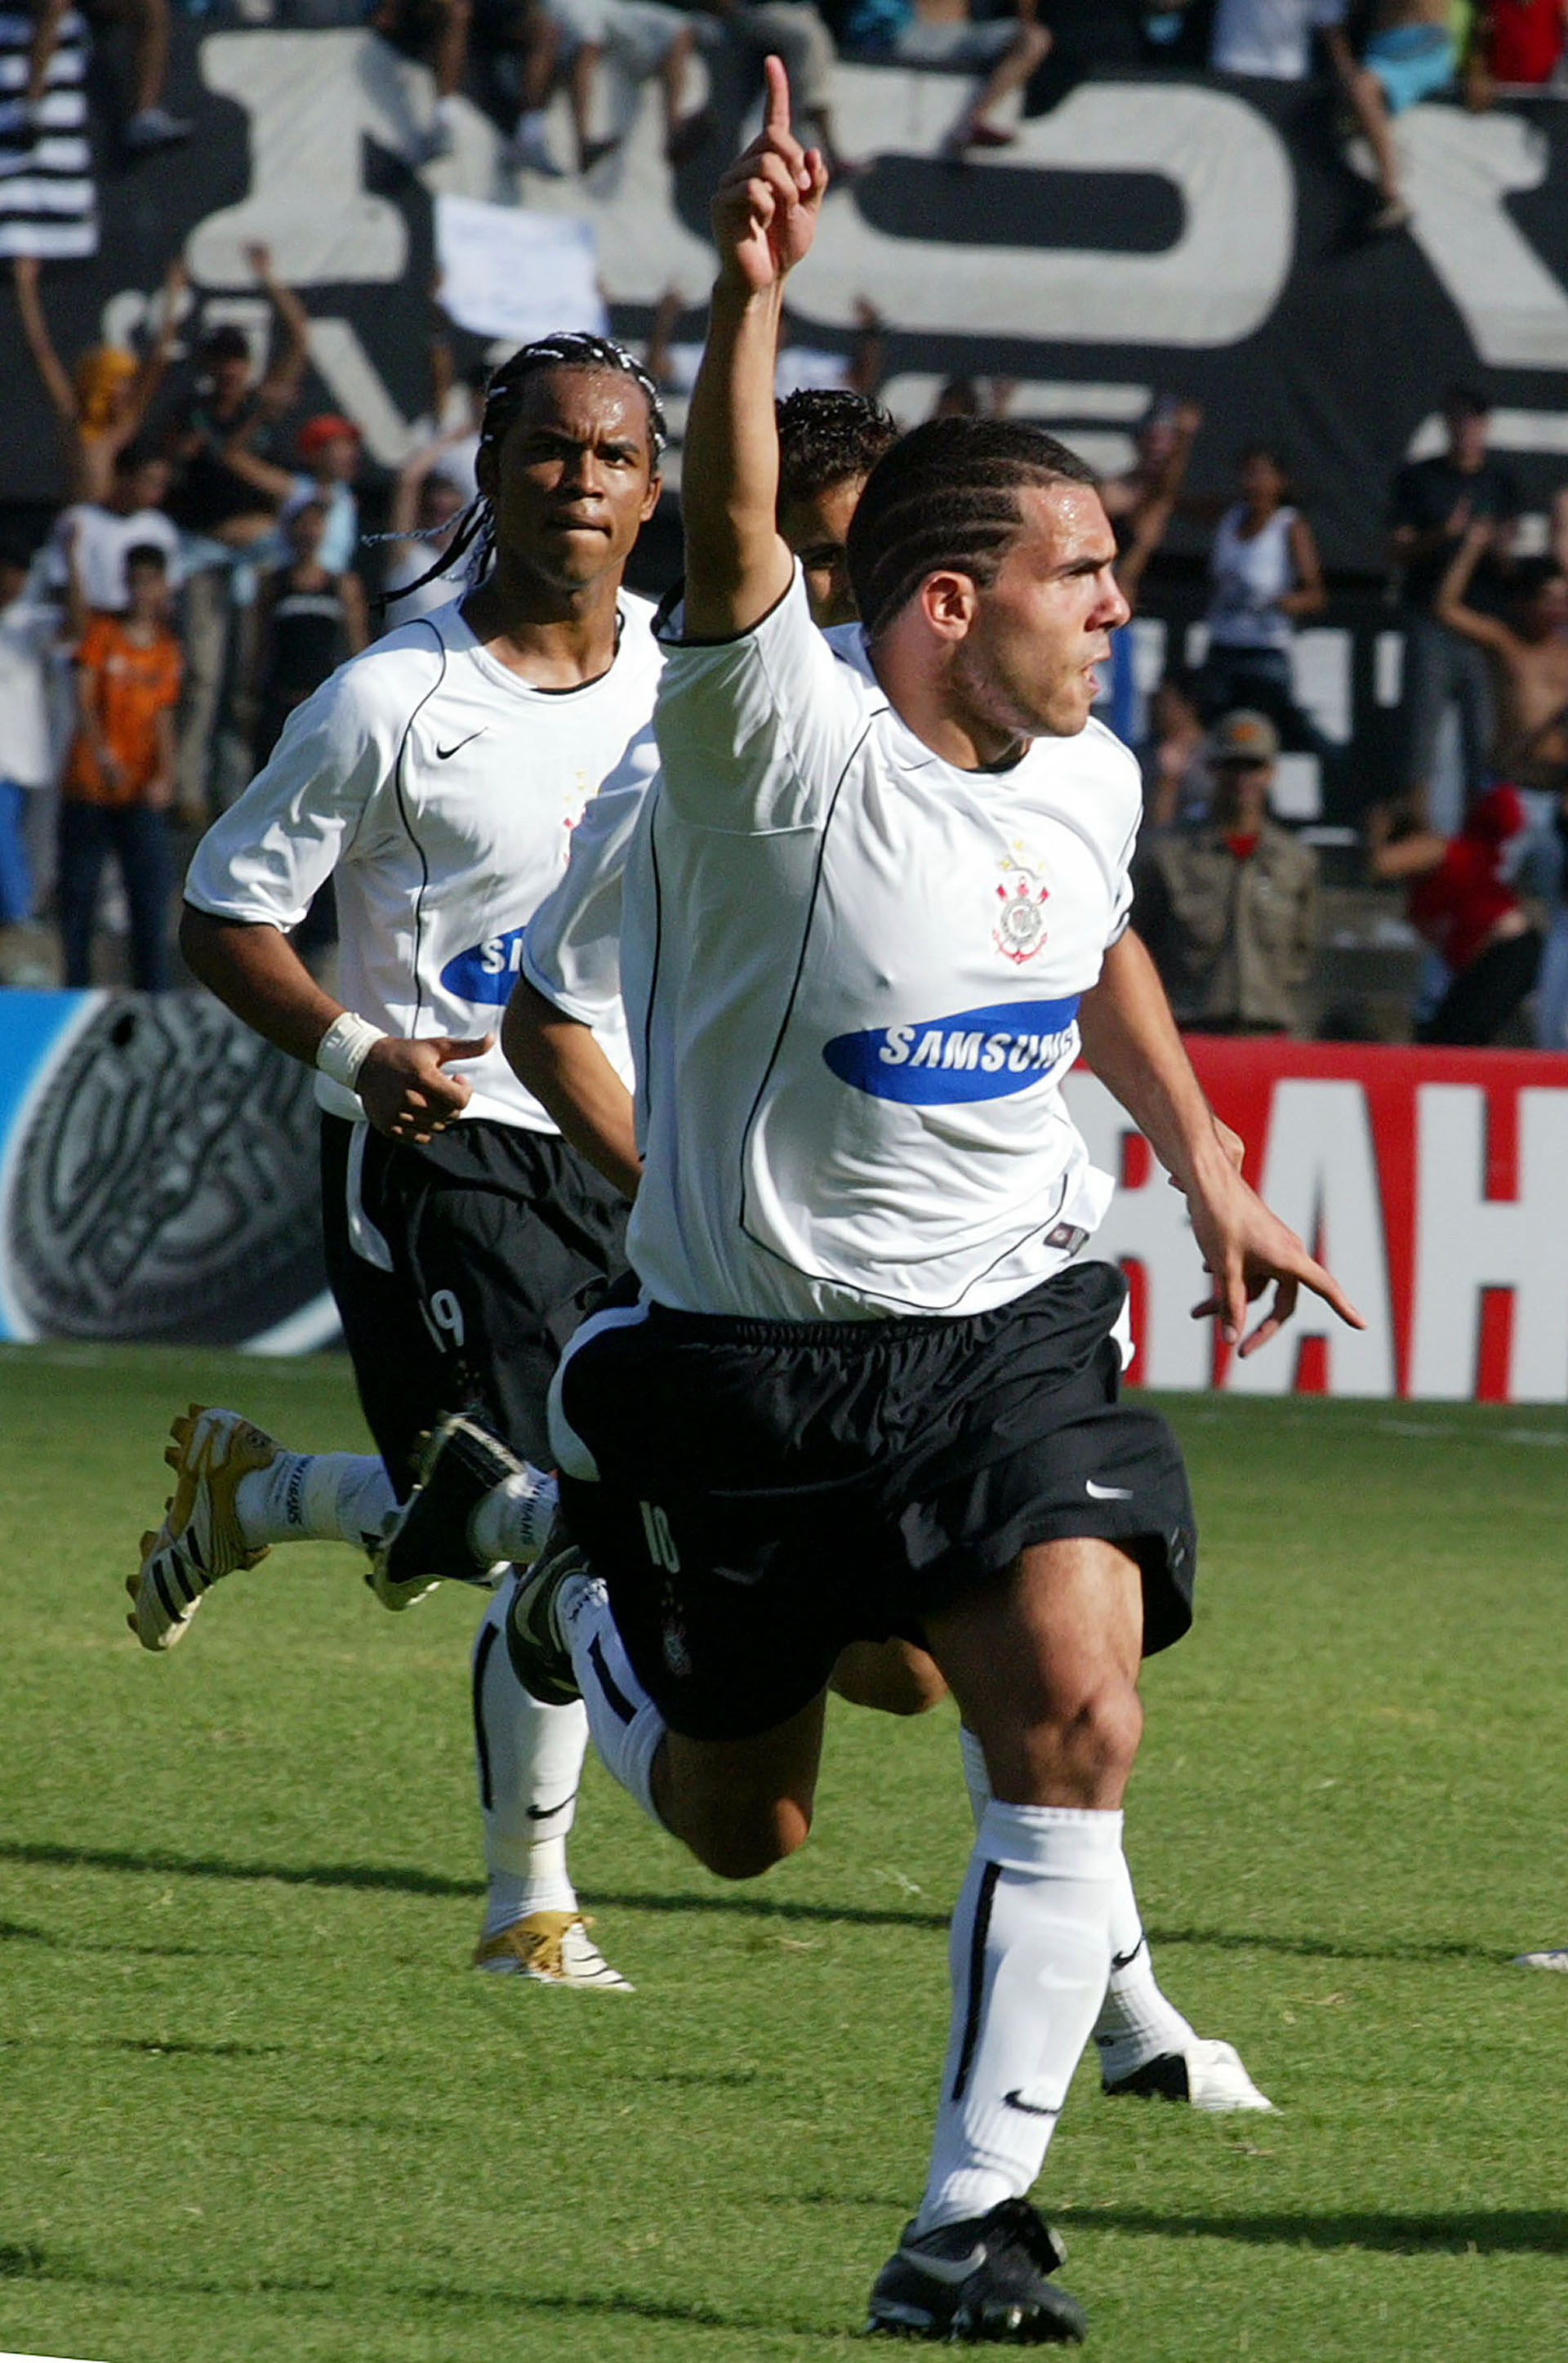 El Apache fue goleador y considerador el mejor jugador del fútbol brasileño en 2005 (REUTERS/Jamil Bittar)